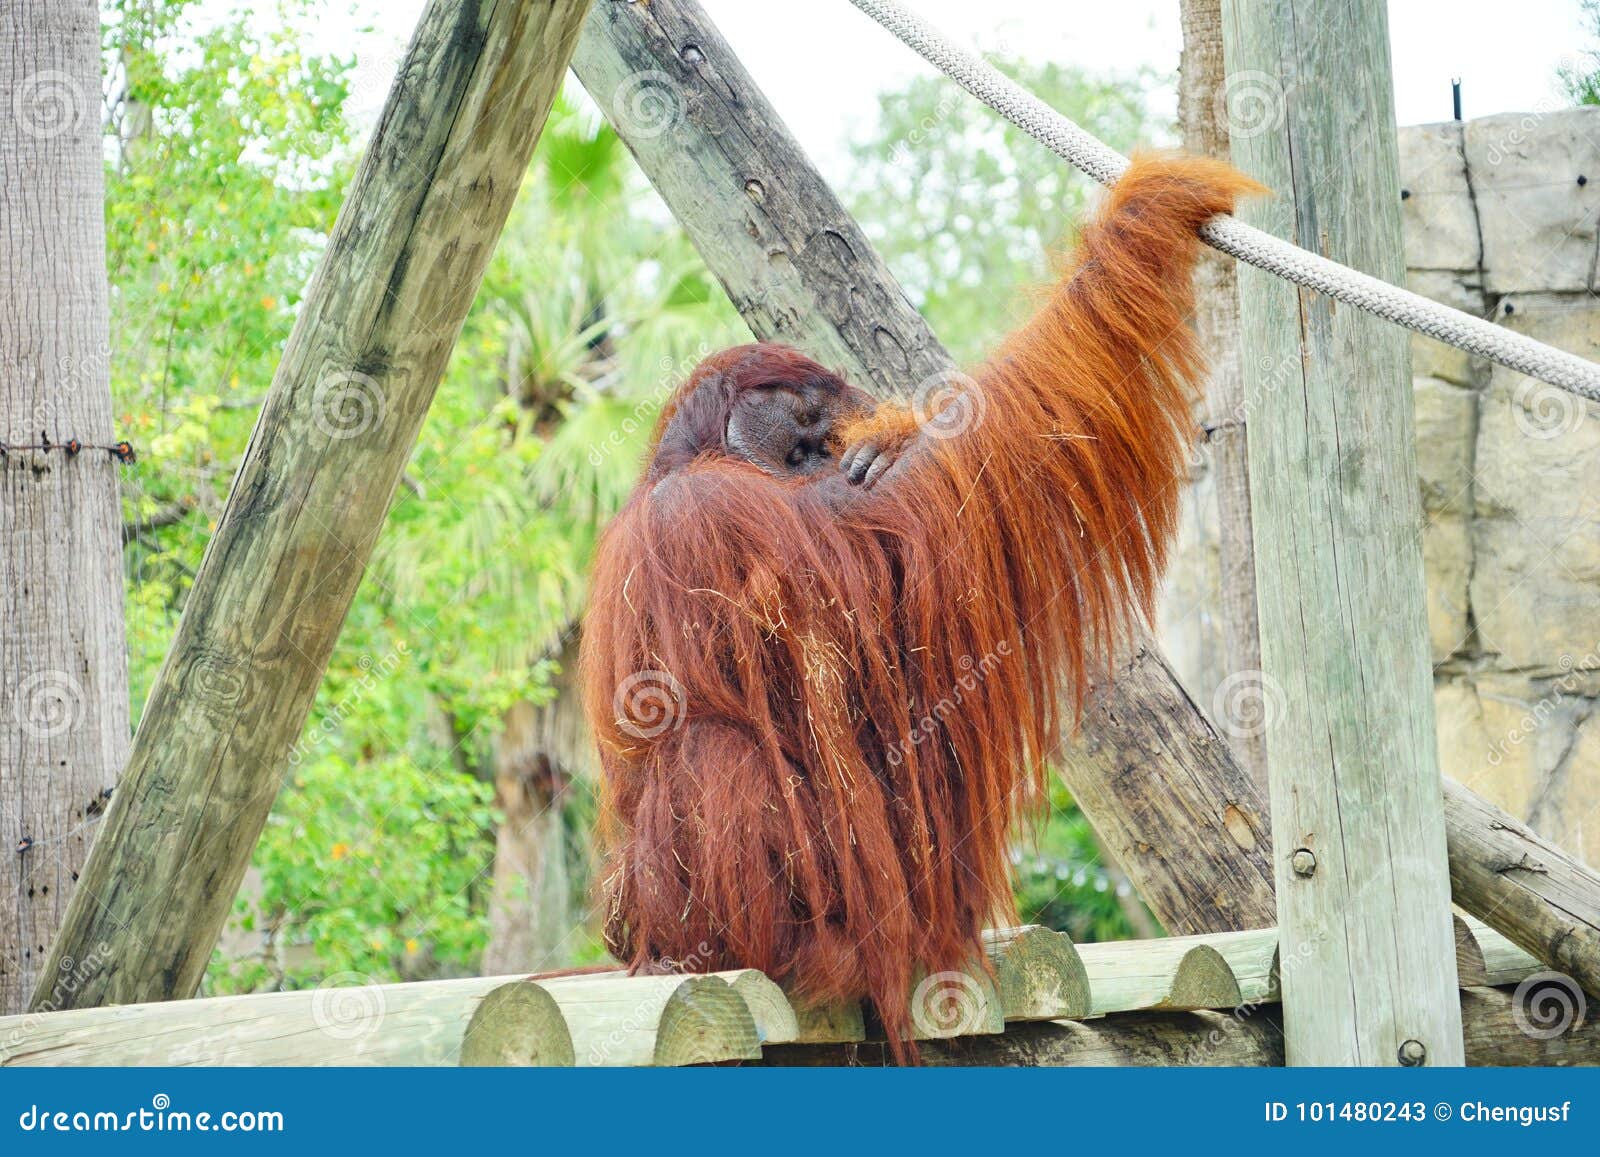 Download Mammal Orangutan Primate Ape Stock Image - Image of hair, environment: 101480243